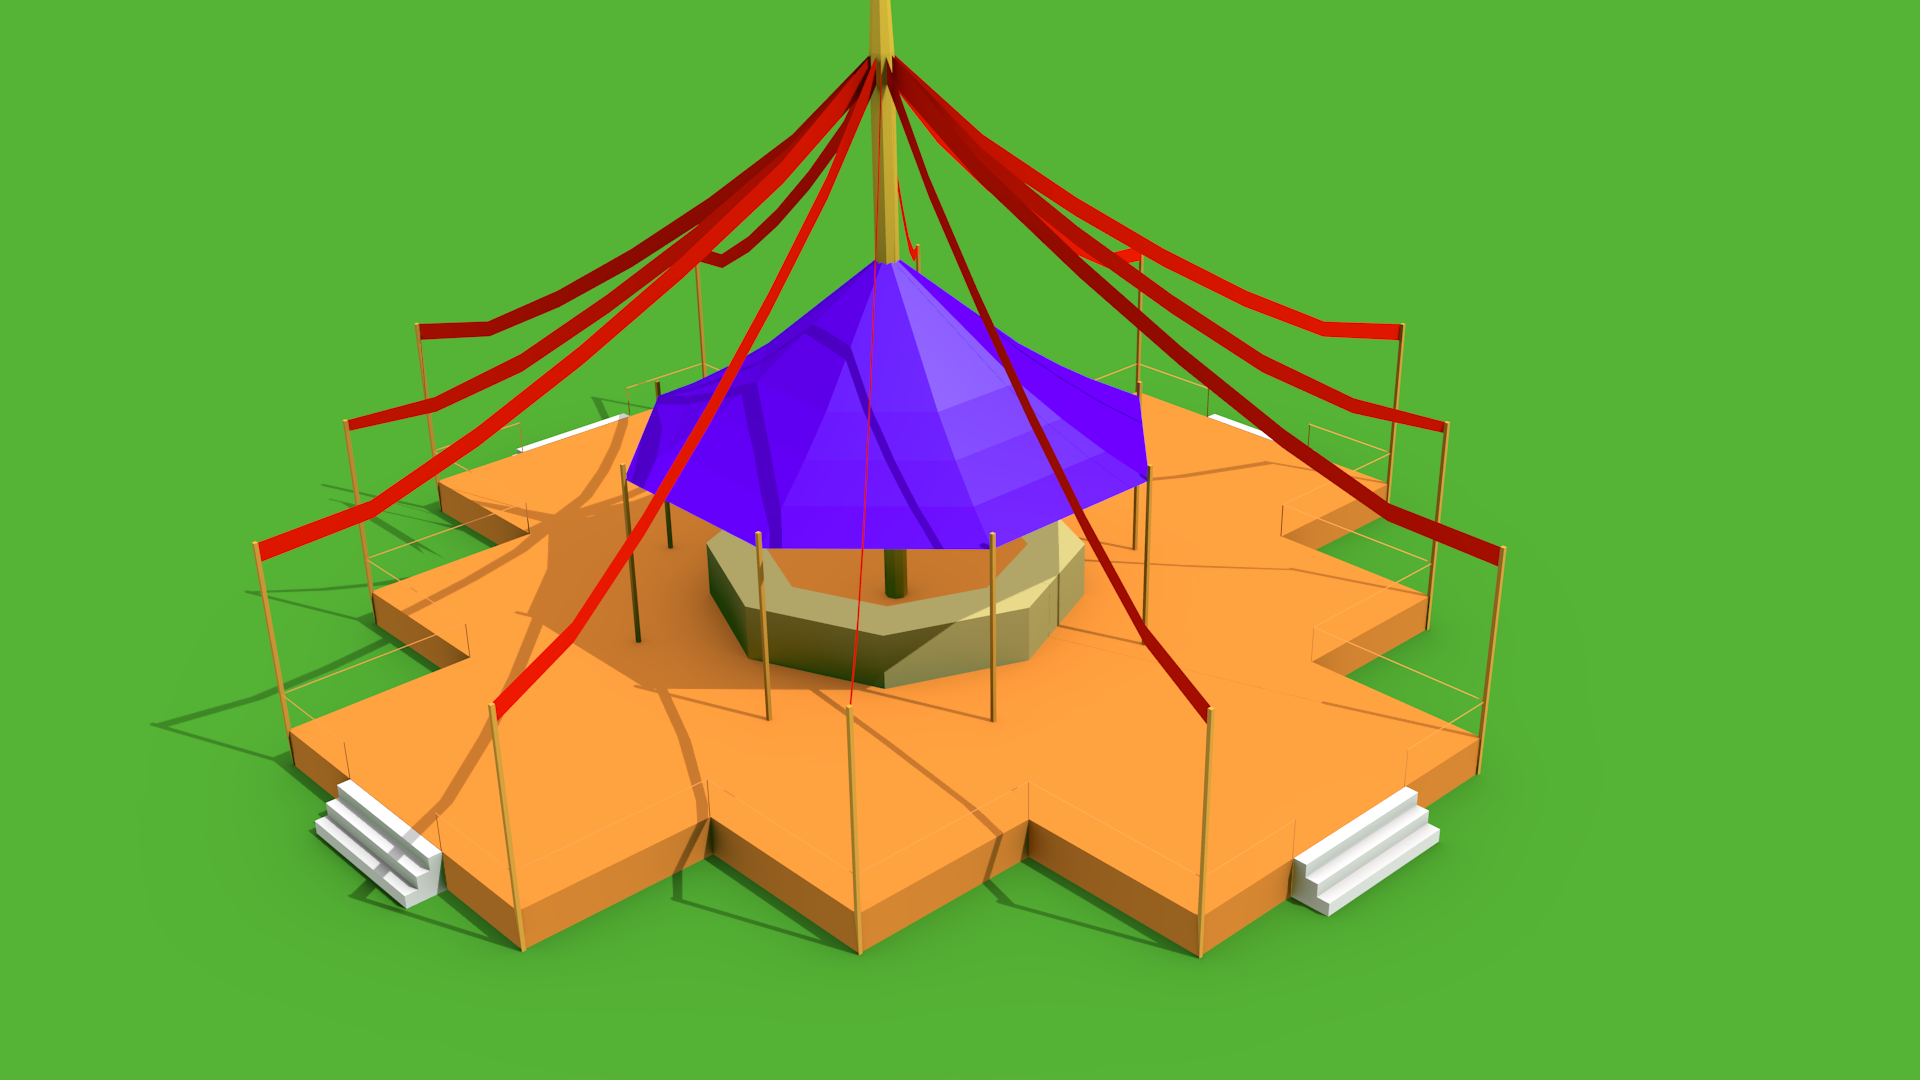 Concept pavilion, version B.